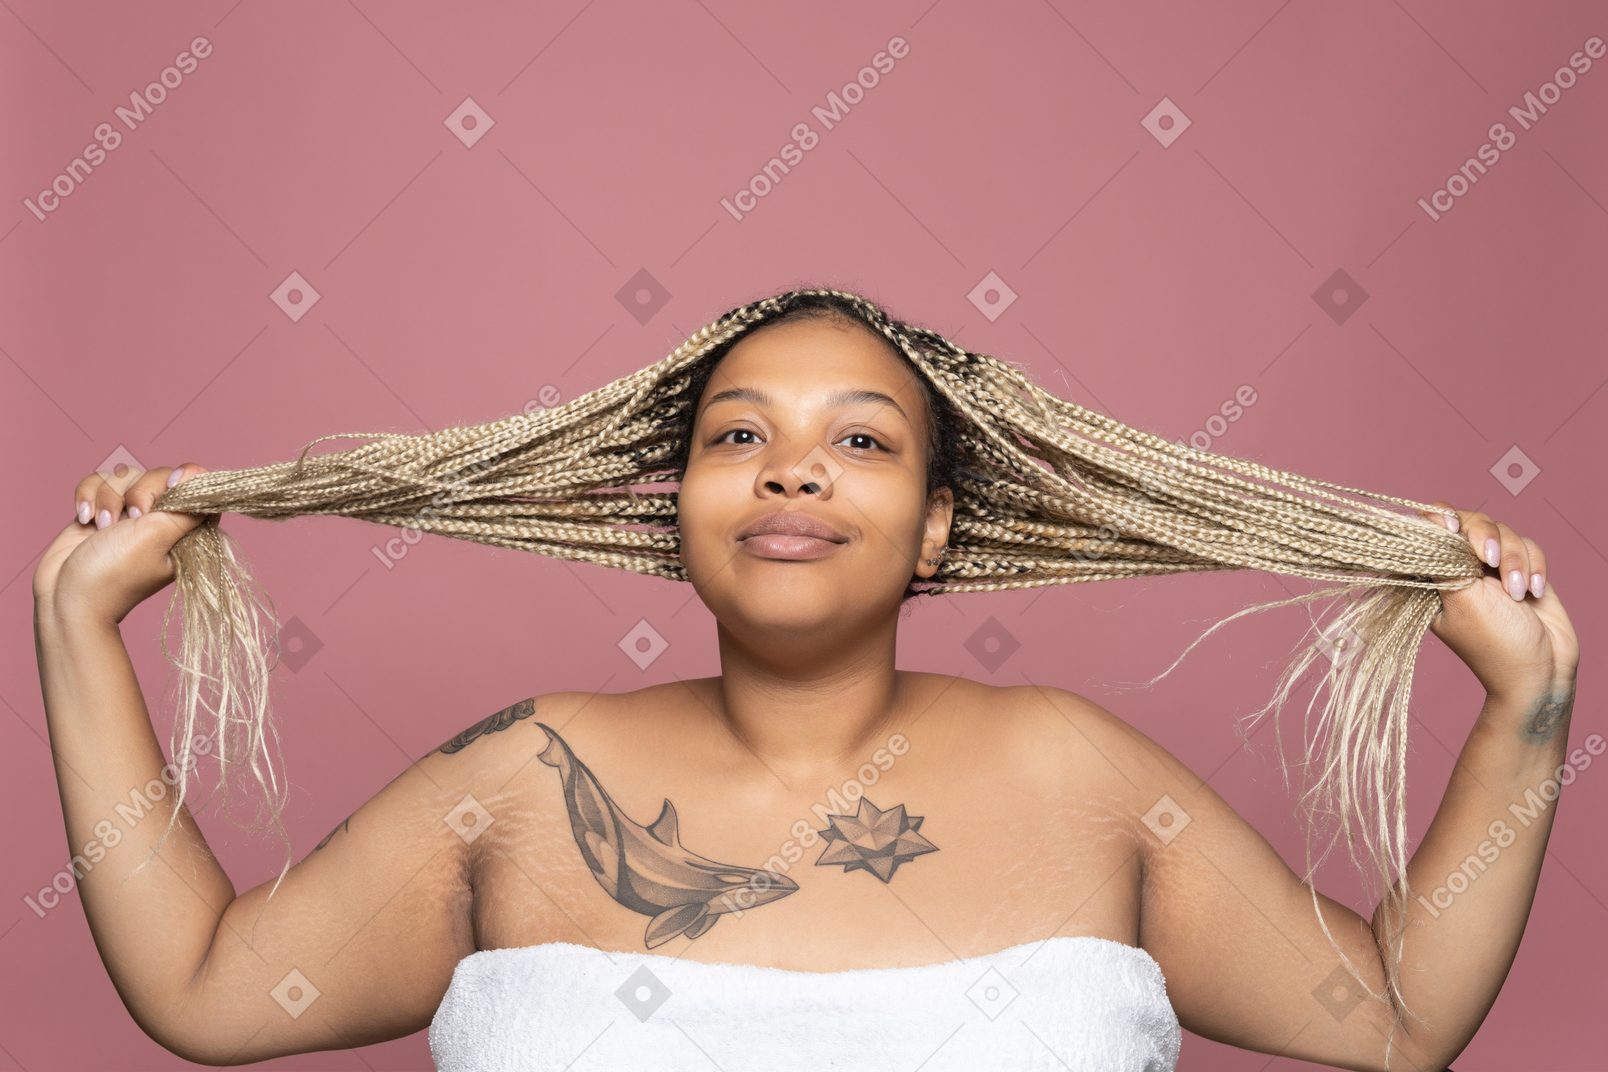 Retrato de uma mulher gorda sorridente com longos cabelos loiros